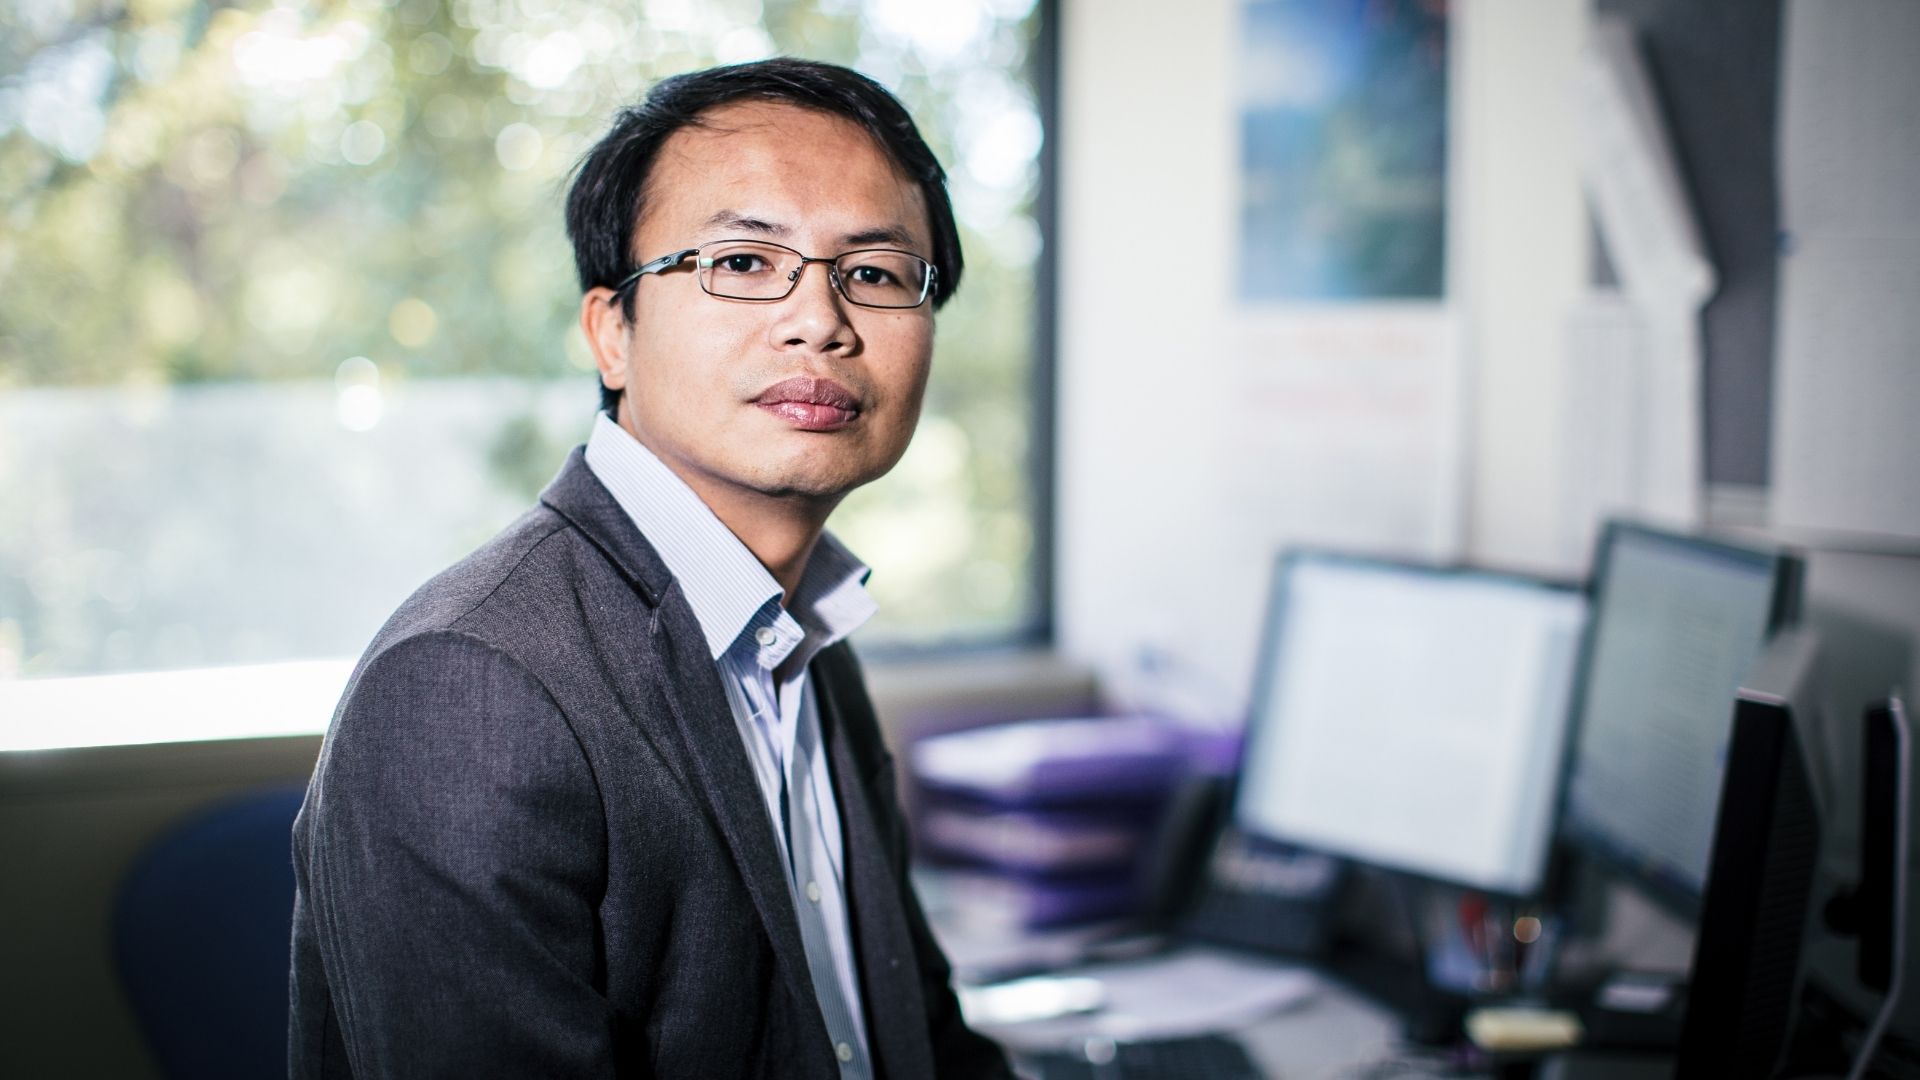 Associate Professor Hoa Khanh Dam